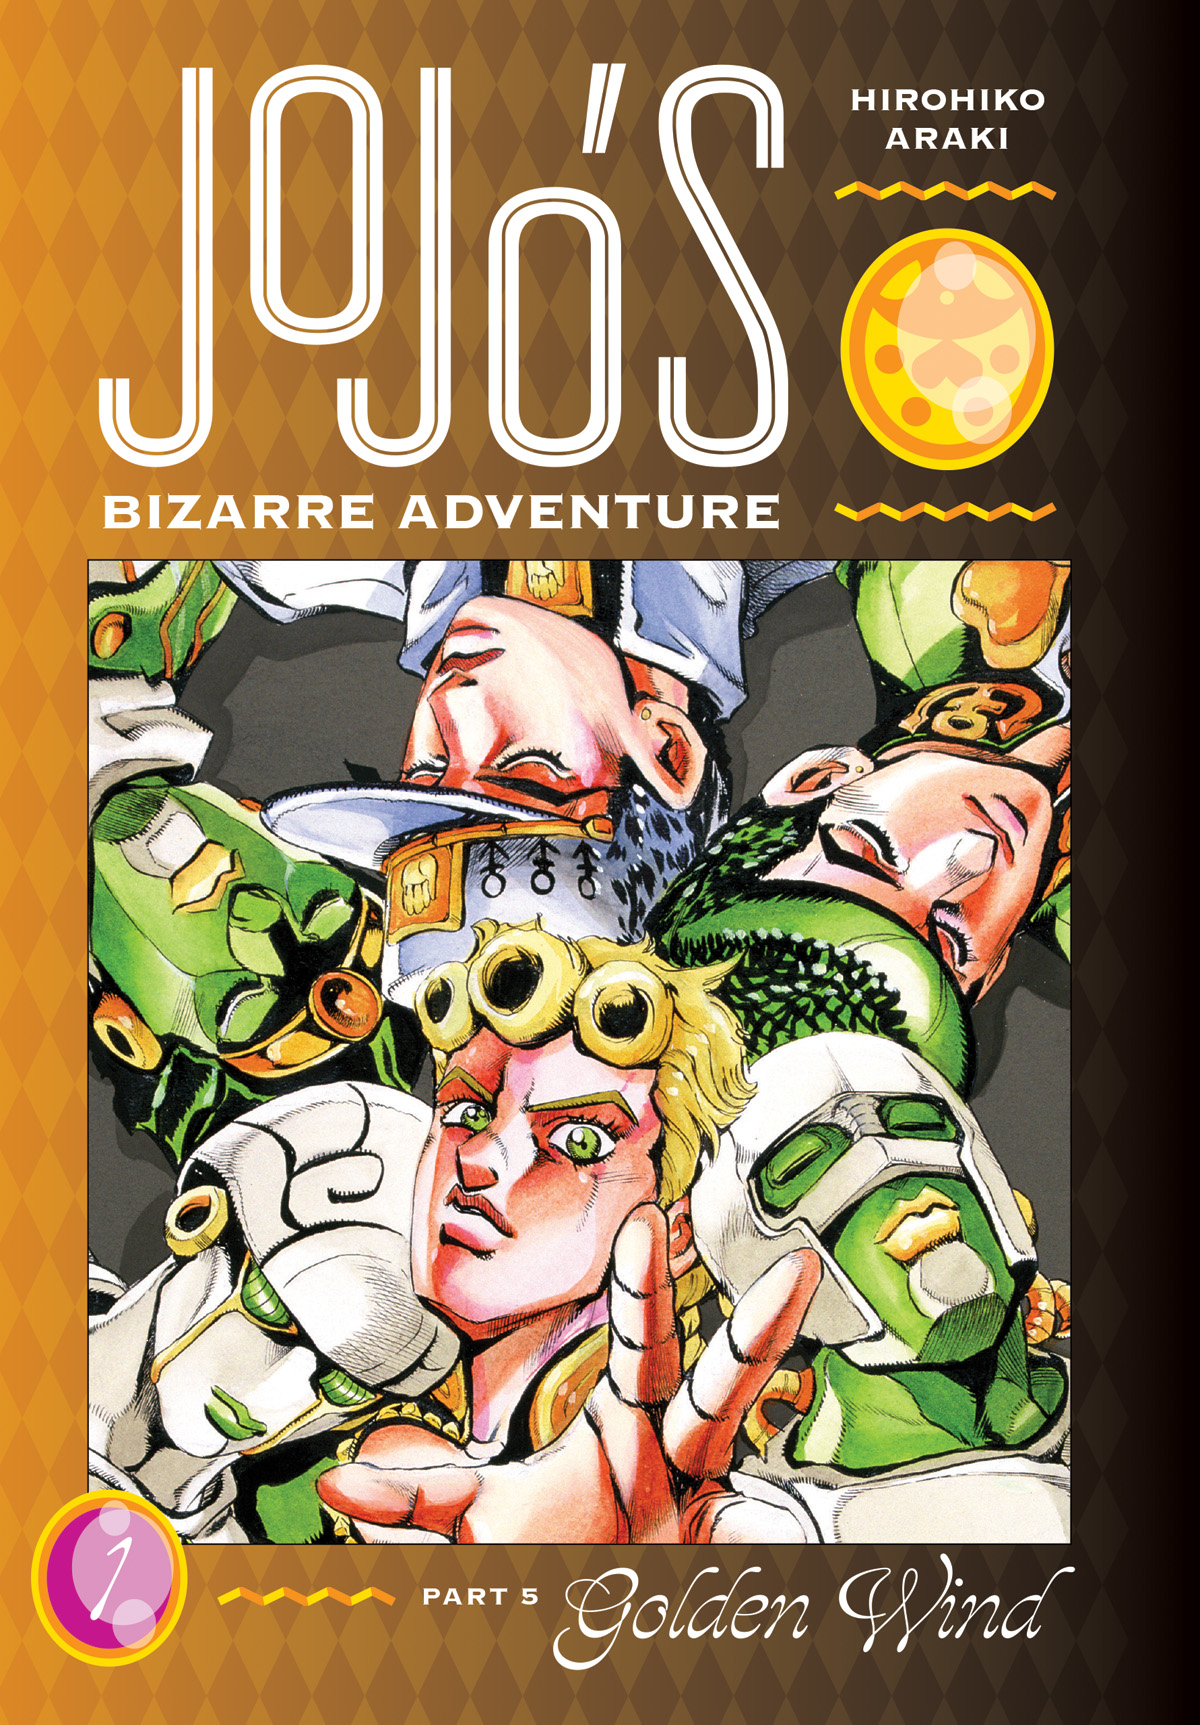 Jojos Bizarre Adventure Part 5 Golden Wind Hardcover Volume 1